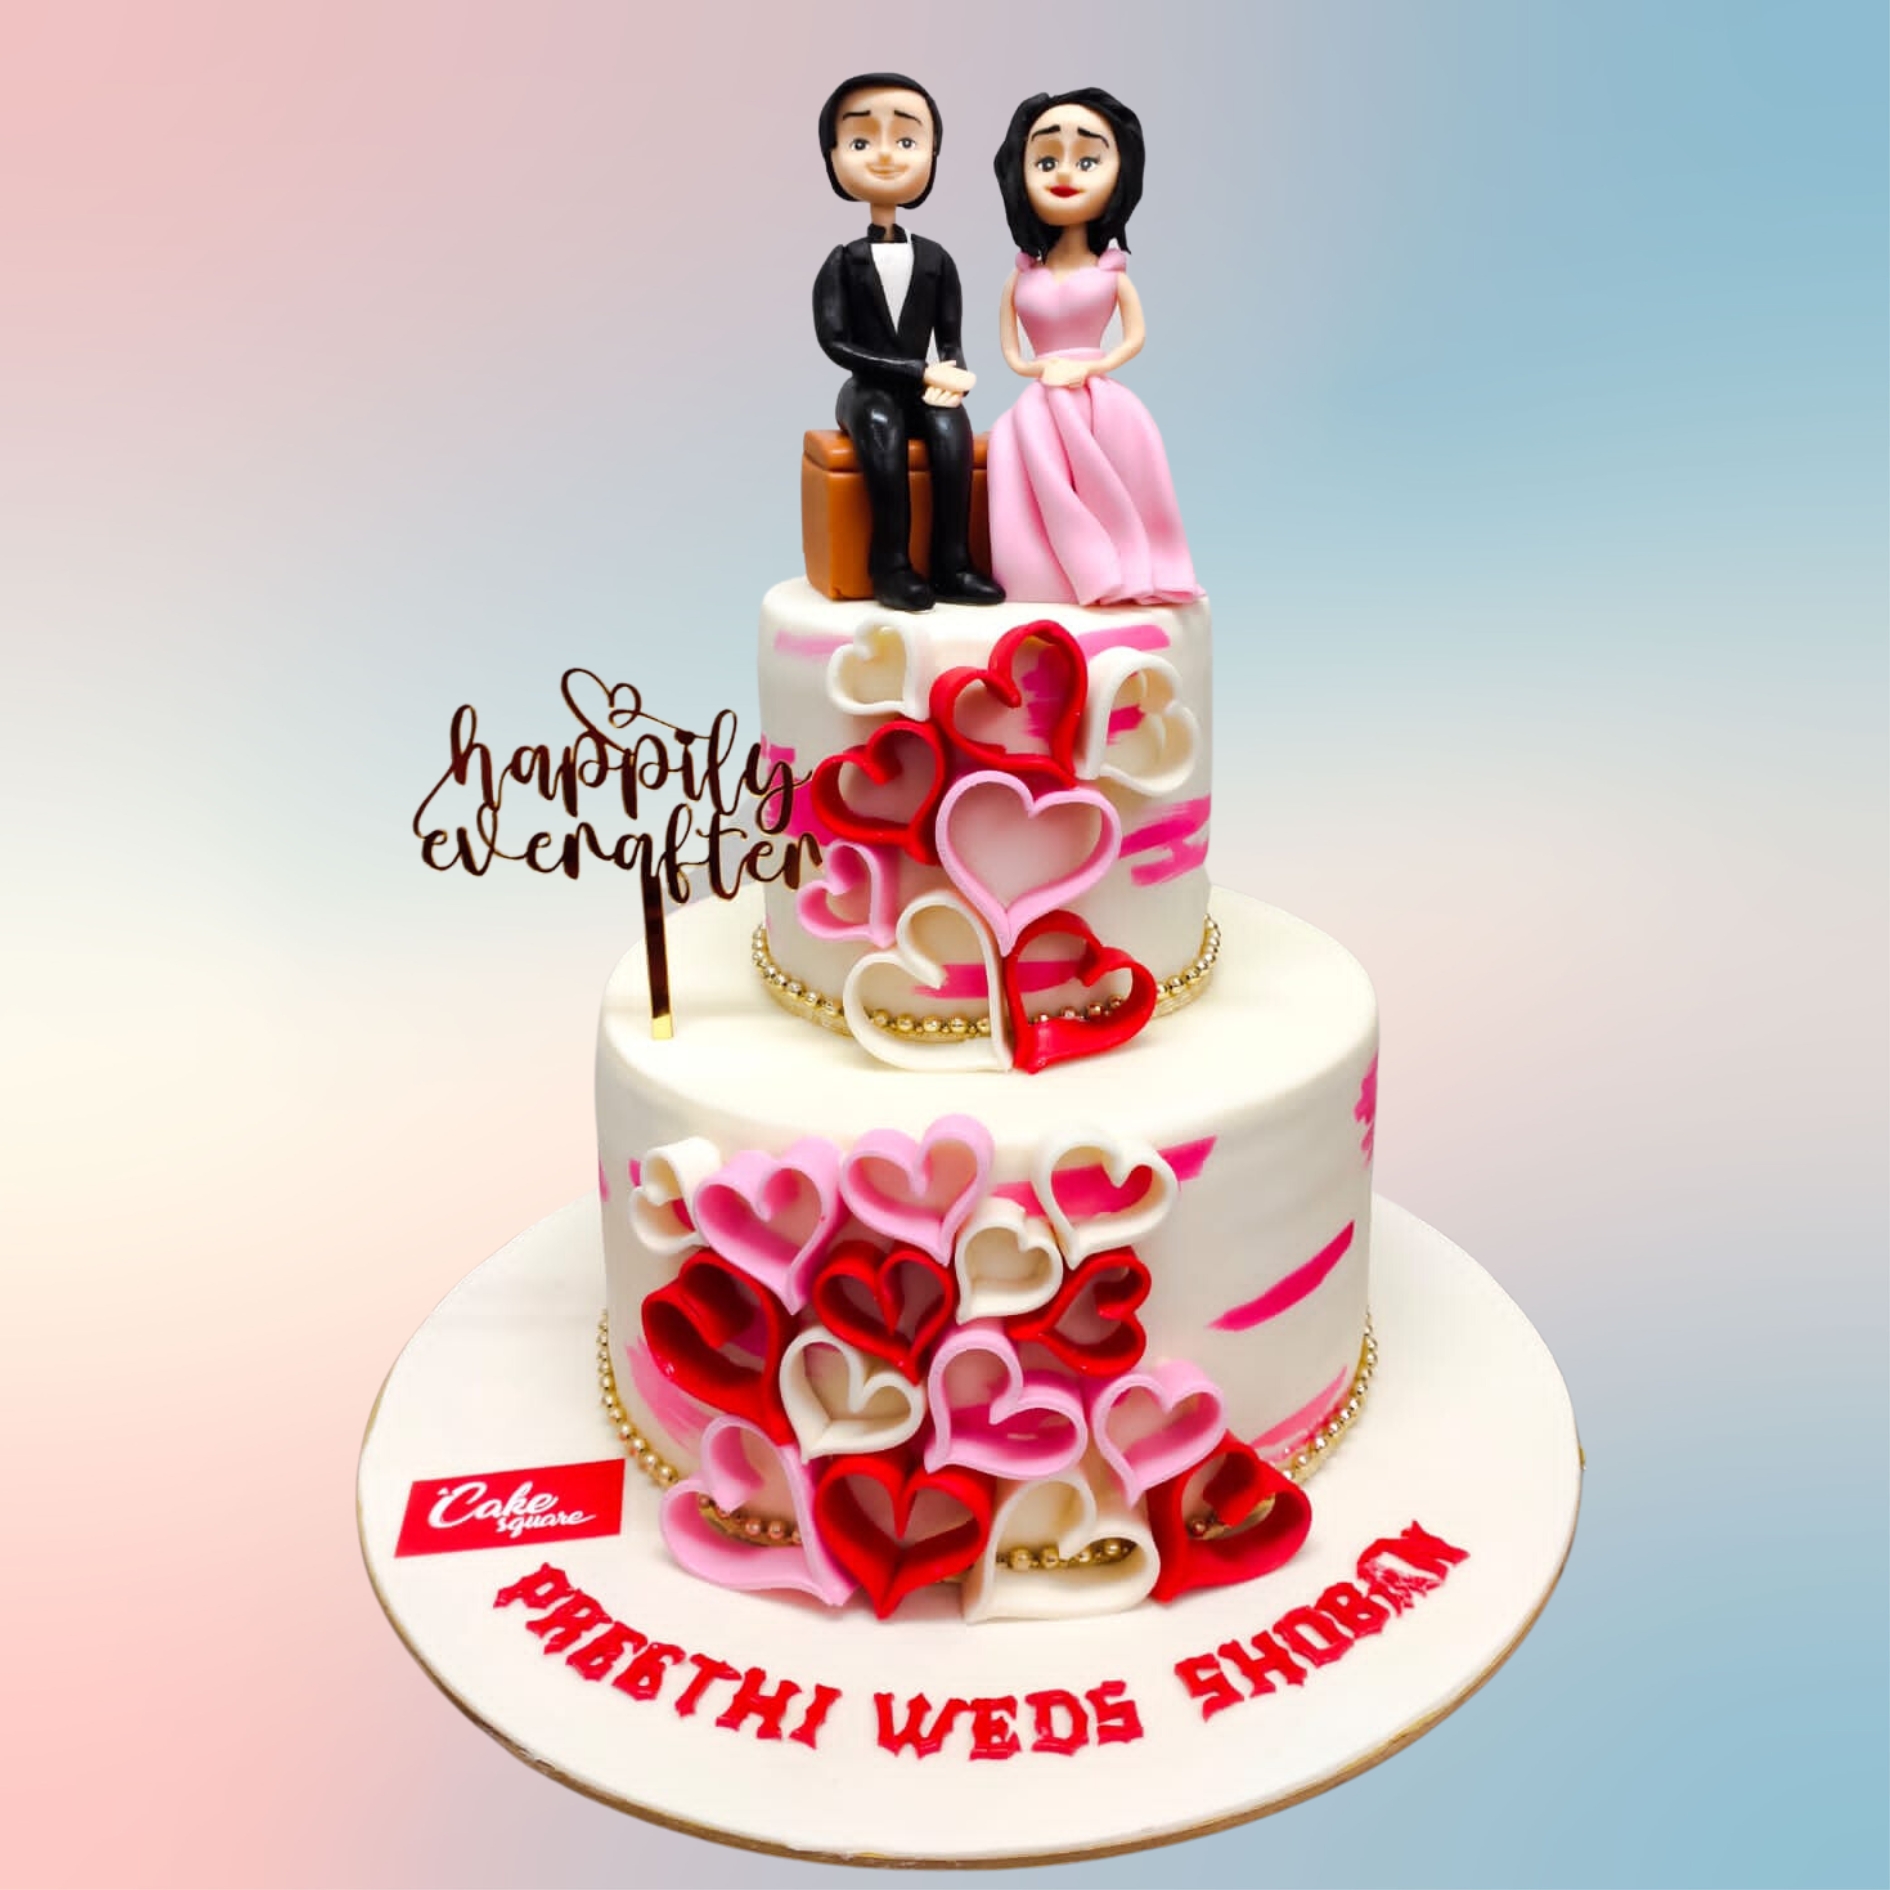 Cute Couple Wedding Cake/ Engagement Cake 64